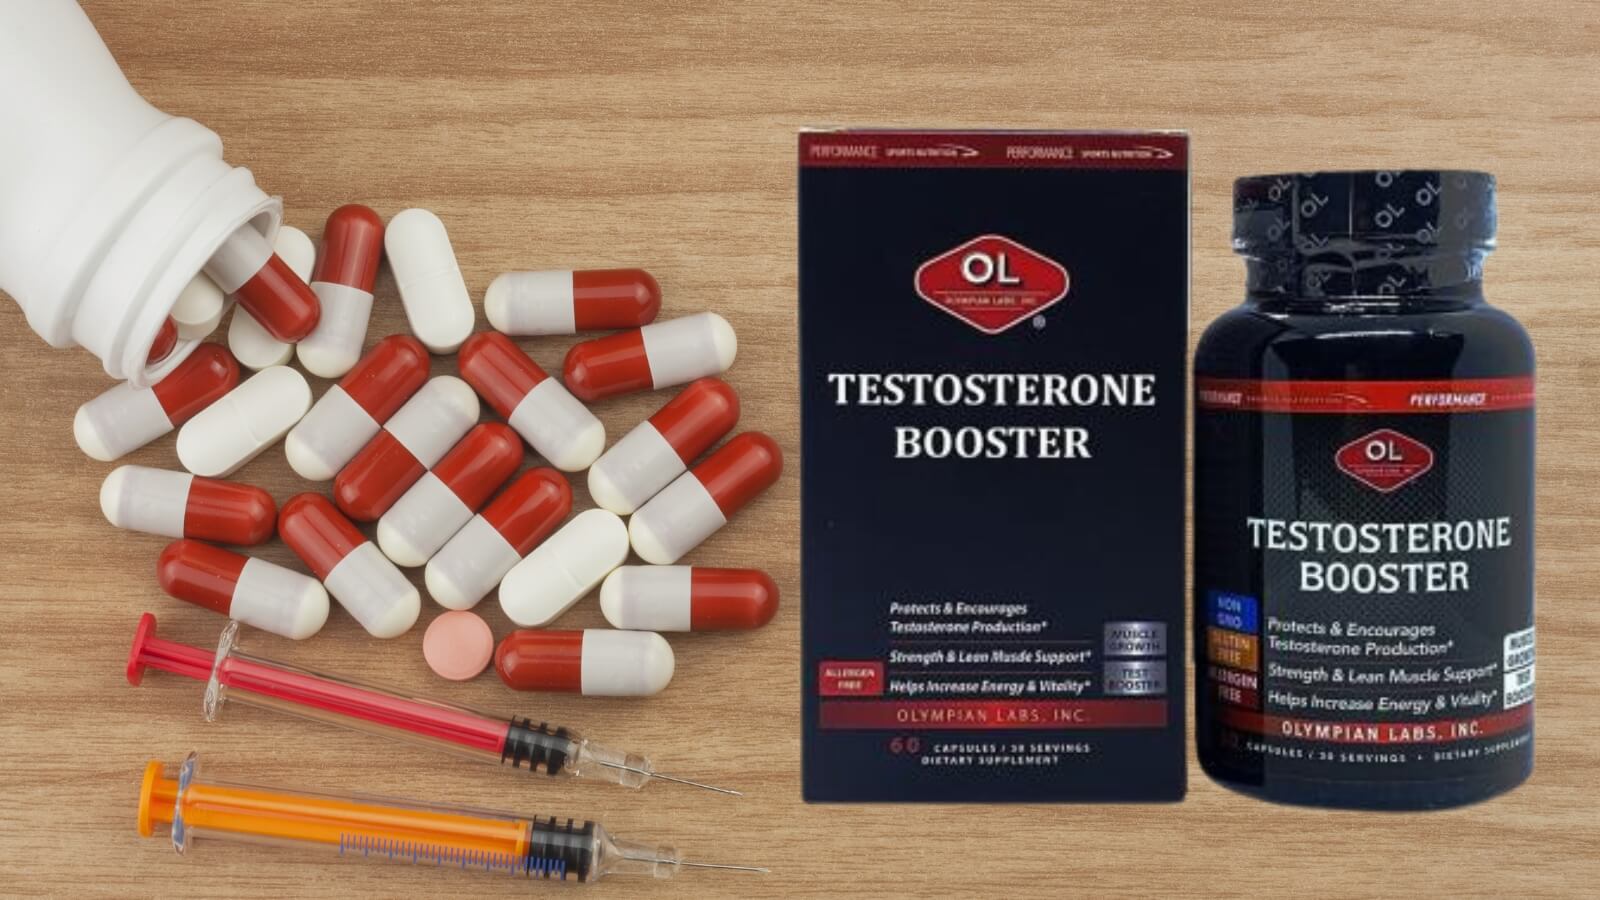 Bổ sung testosterone là một phương pháp điều trị yếu sinh lý